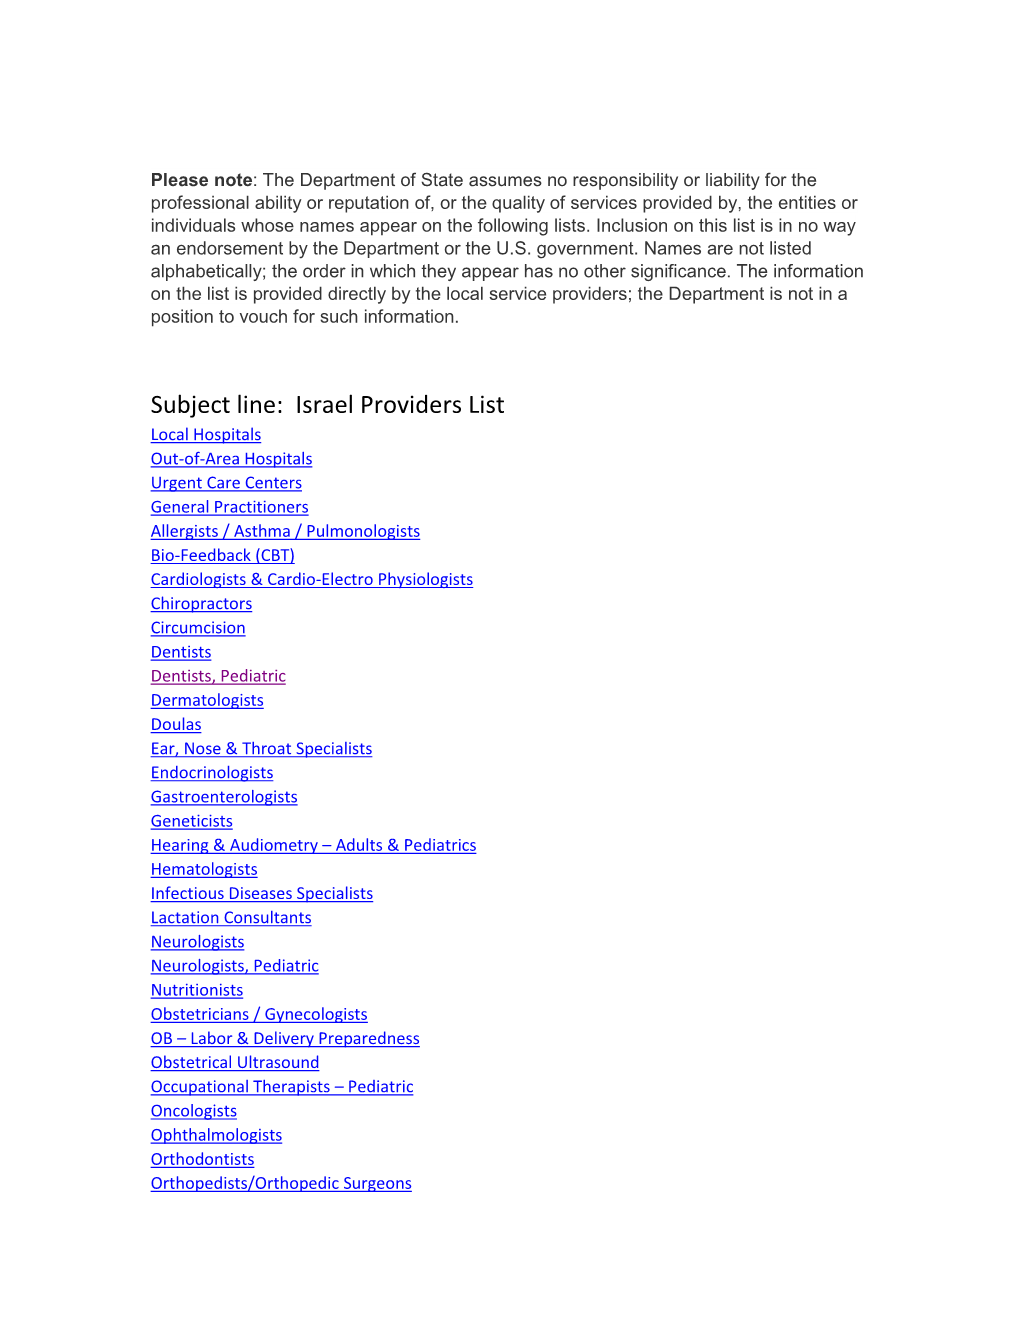 Israel Providers List